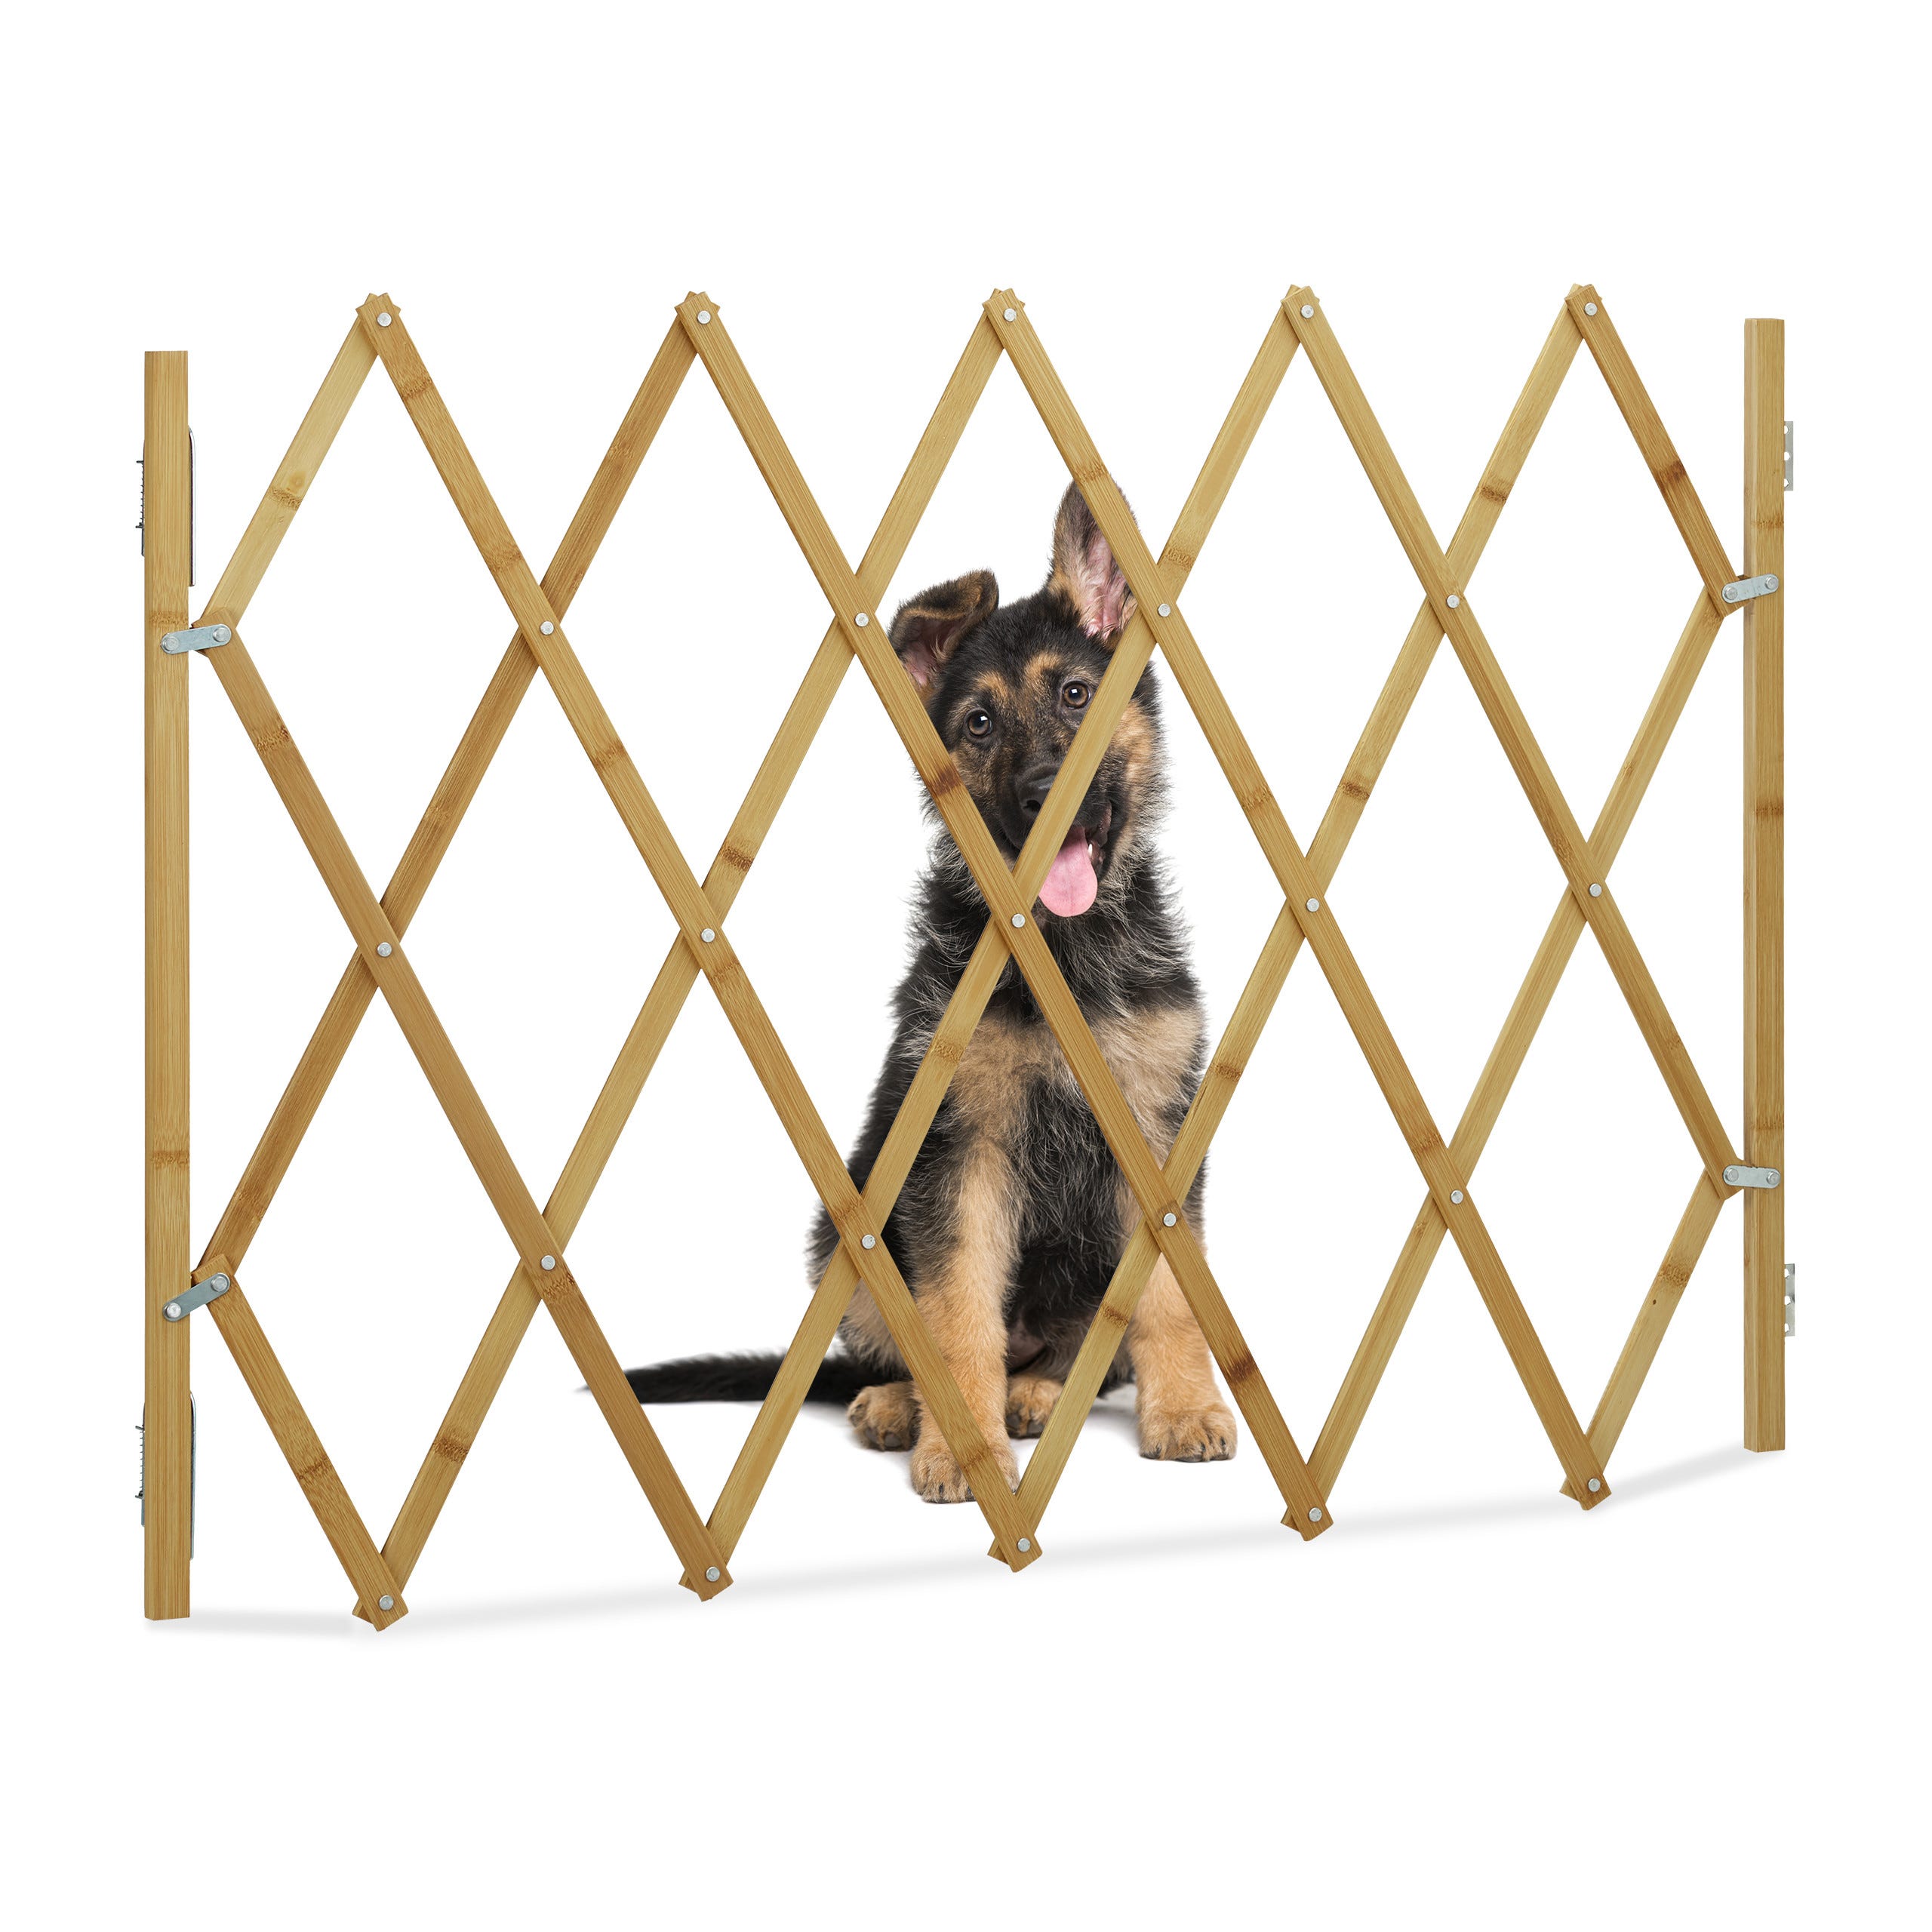 Barriere securite Barriere securite chien Barriere protection escalier